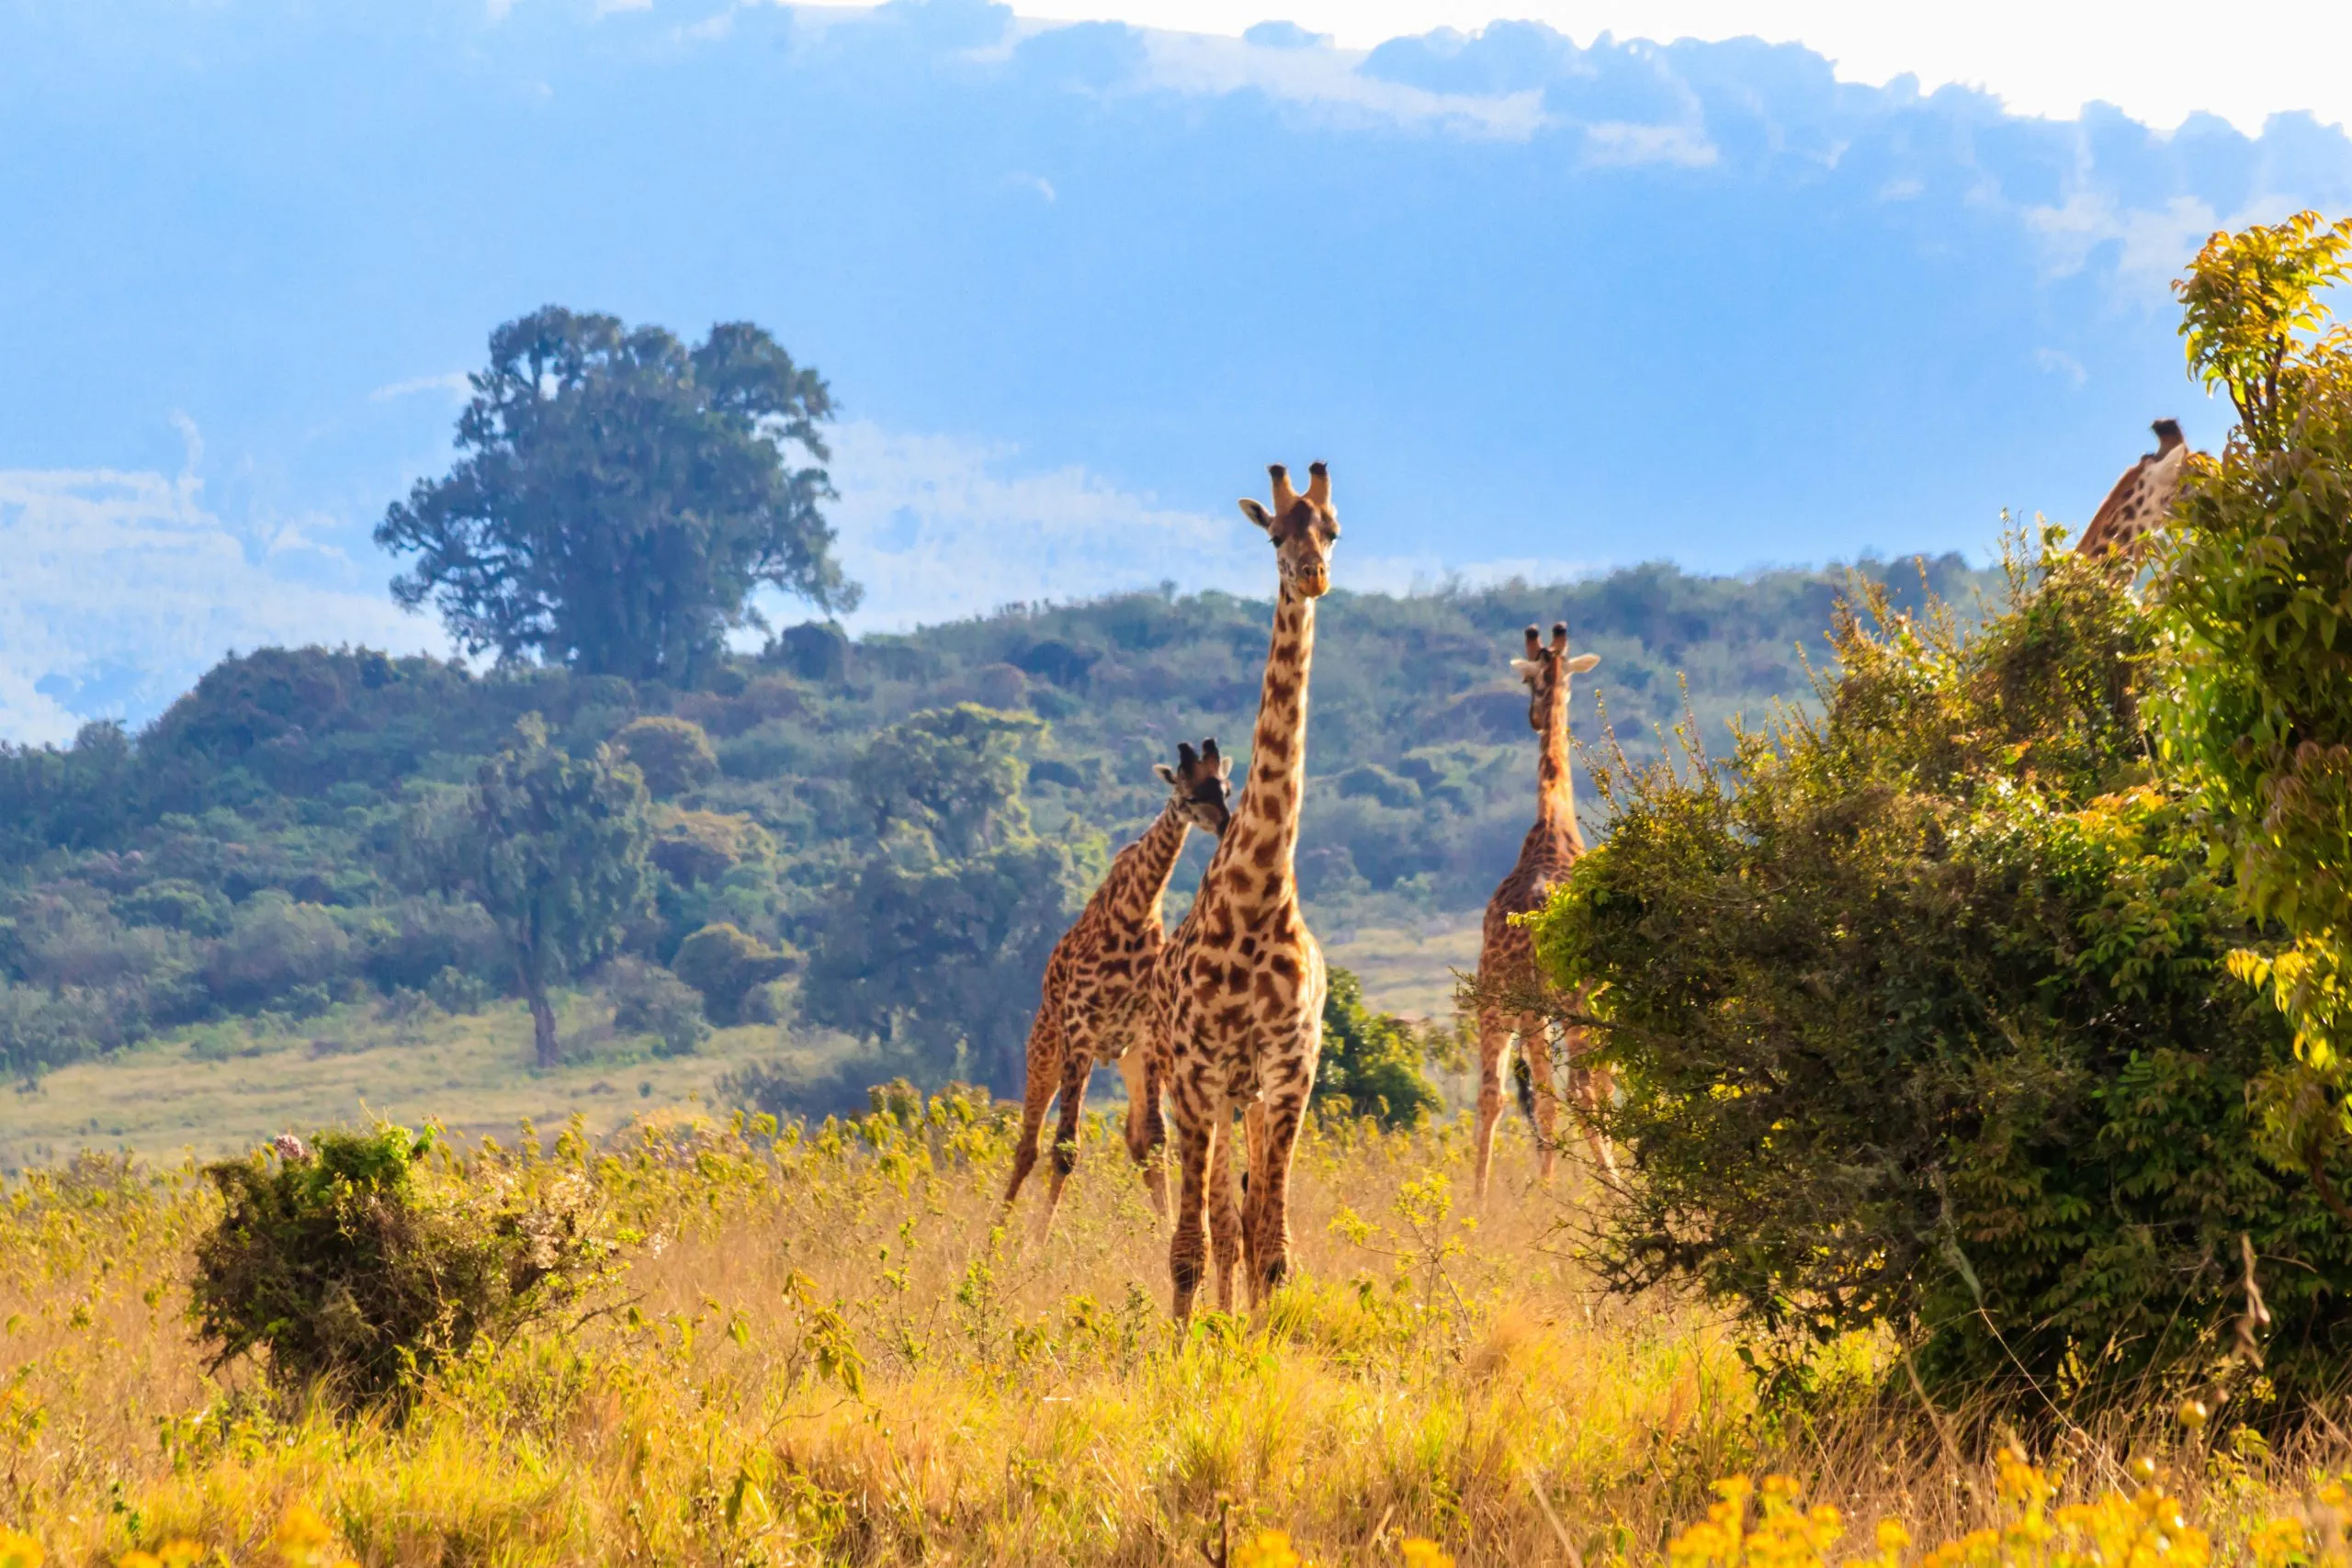 Gruppe af giraffer på vandring i Ngorongoro Conservation Area i Tanzania. Afrikas vilde dyreliv